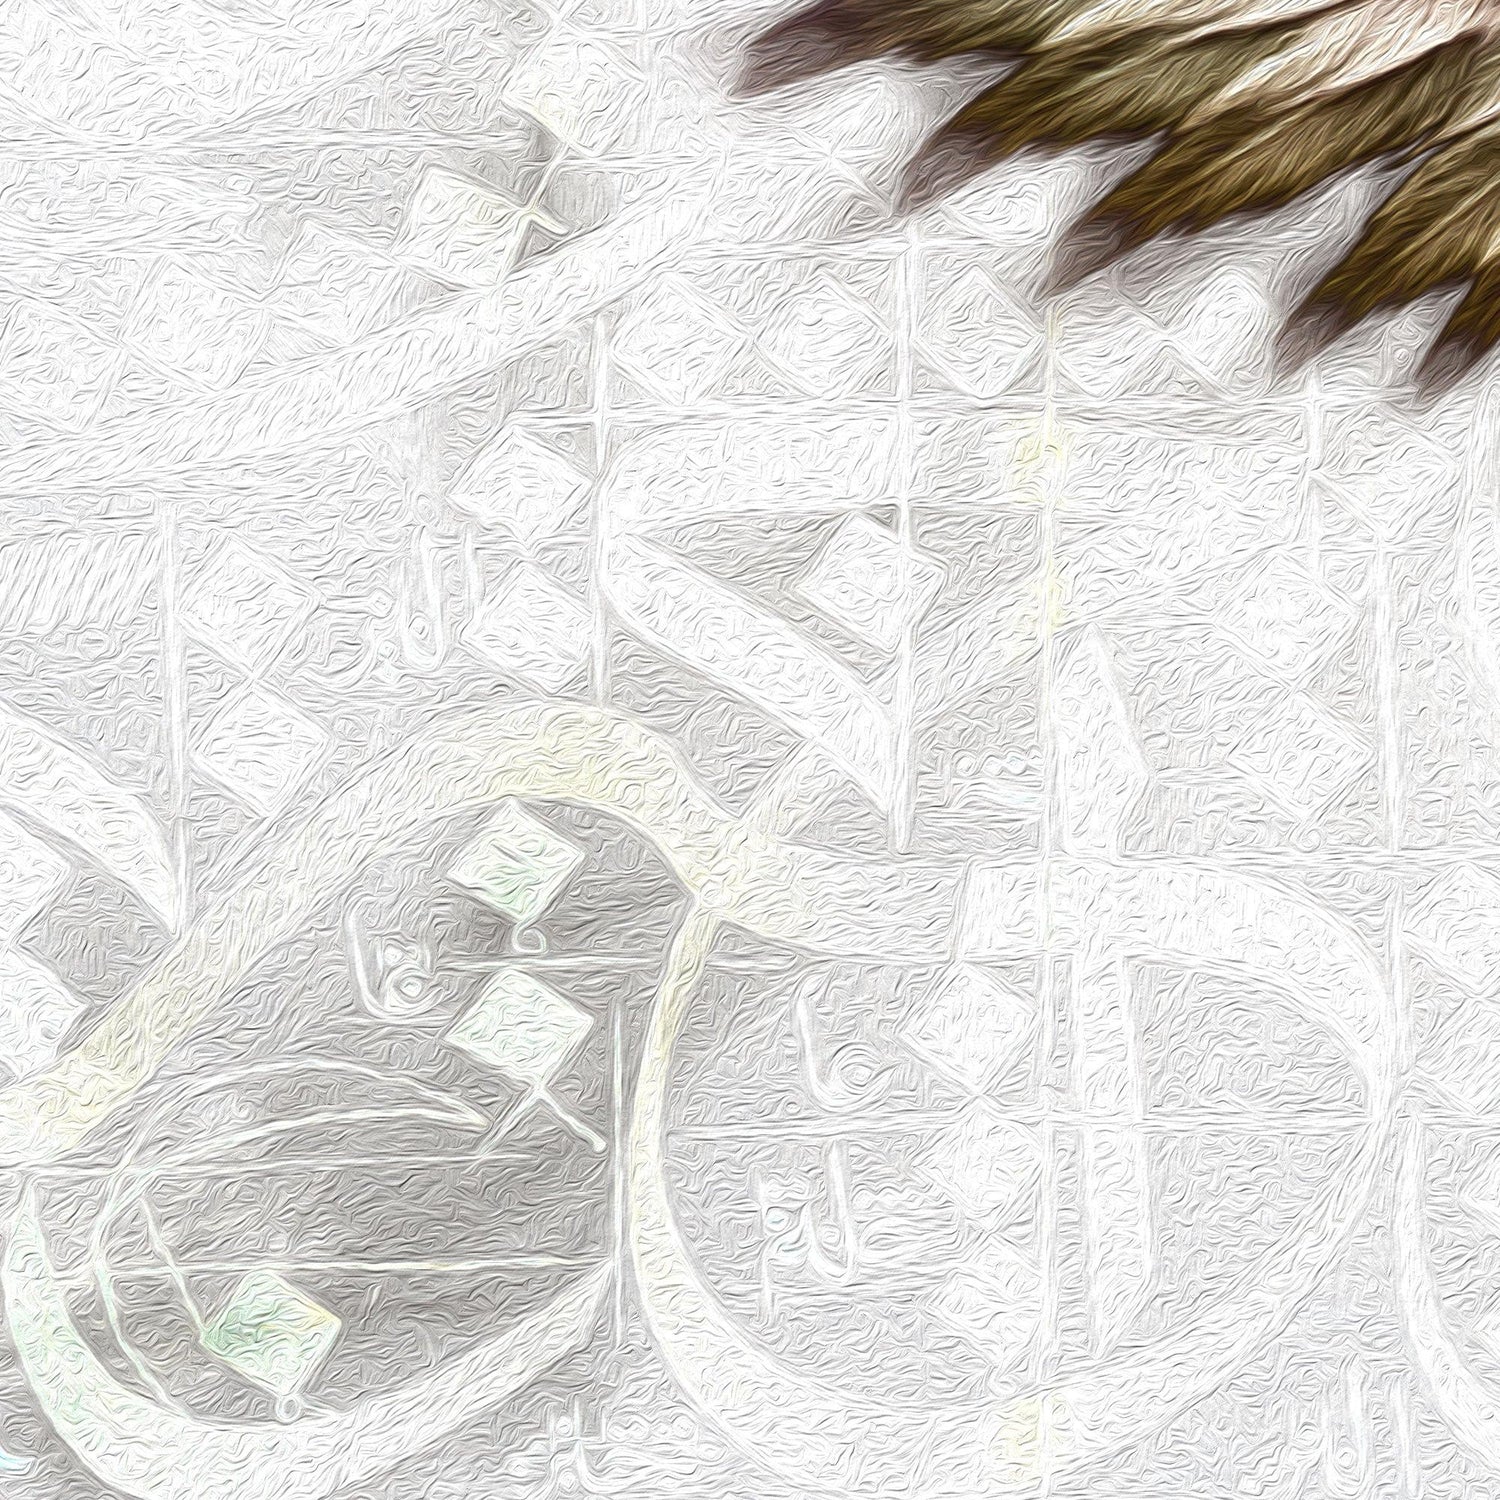 Flying Enthusiasm | Persian Wall Art | Persian Home Wall Decor - ORIAVI Persian Art, persian artwork for sale, persian calligraphy, persian calligraphy wall art, persian mix media wall art, persian painting, persian wall art